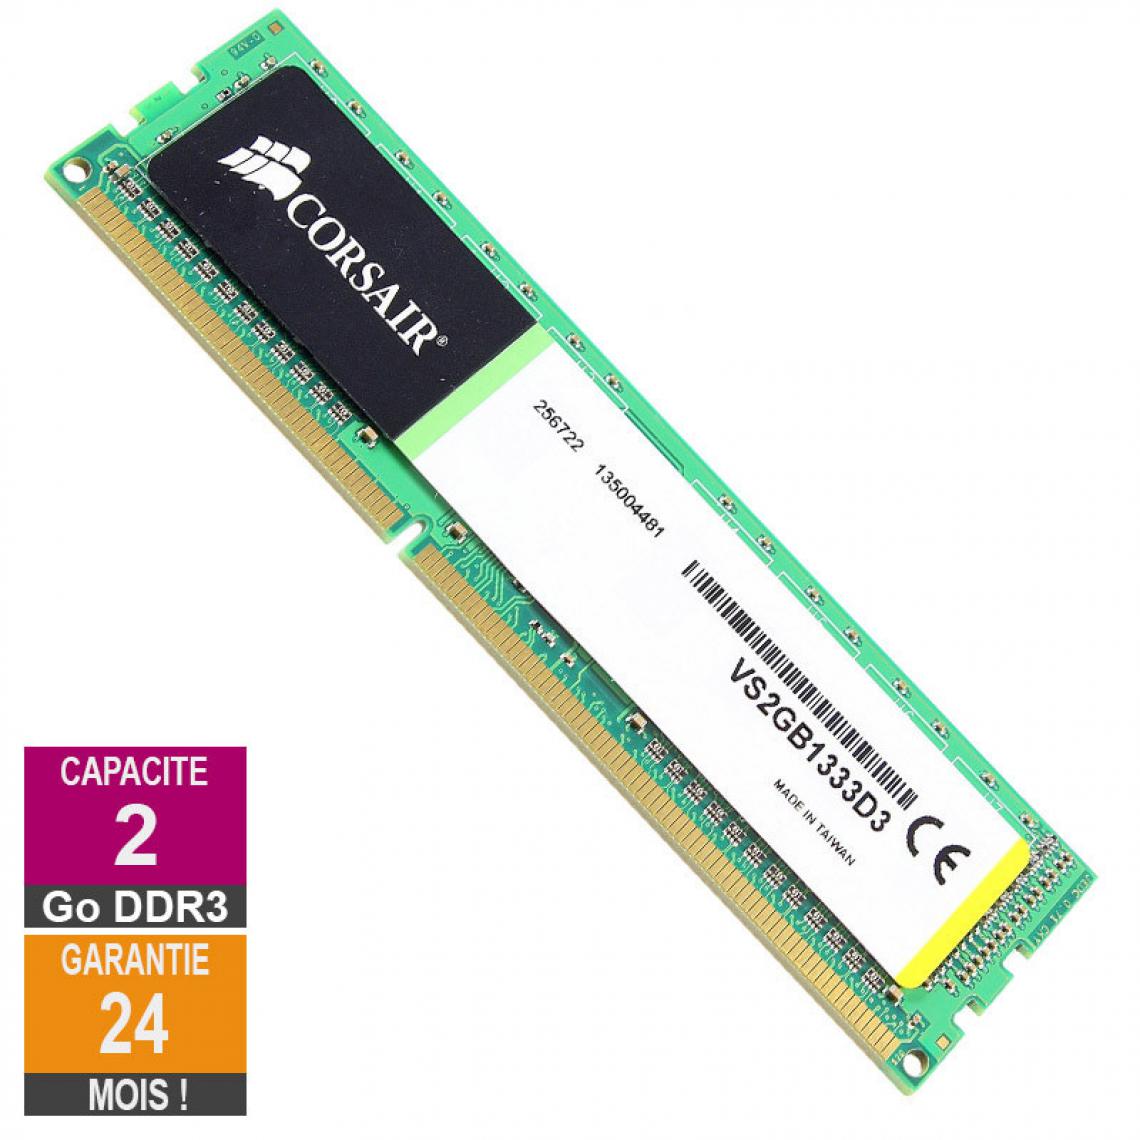 Corsair - Barrette Mémoire 2Go RAM DDR3 Corsair VS2GB1333D3 DIMM PC3-10600U 1333MHz 1Rx8 - RAM PC Fixe